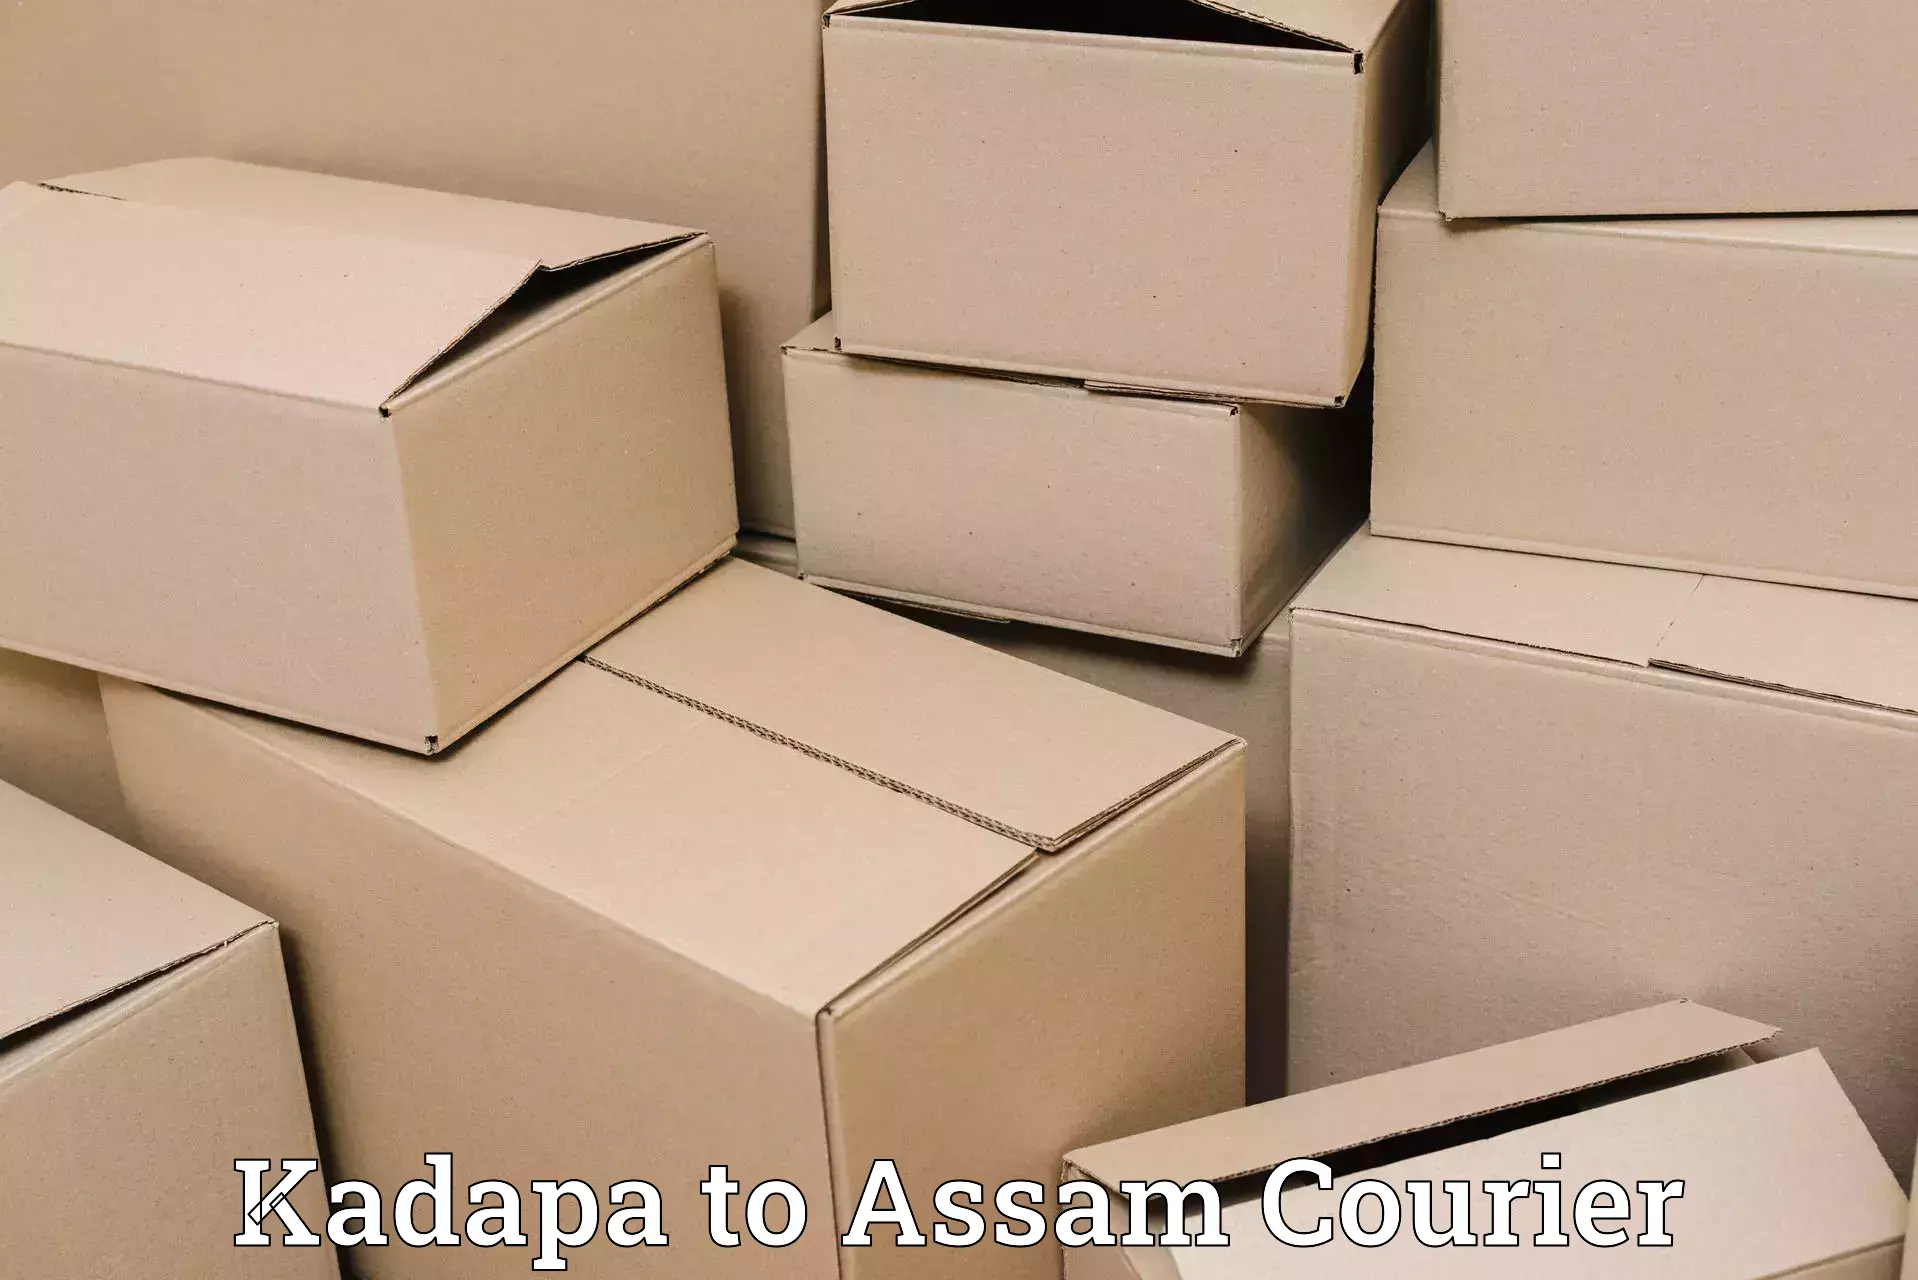 Customer-centric shipping Kadapa to Rangia